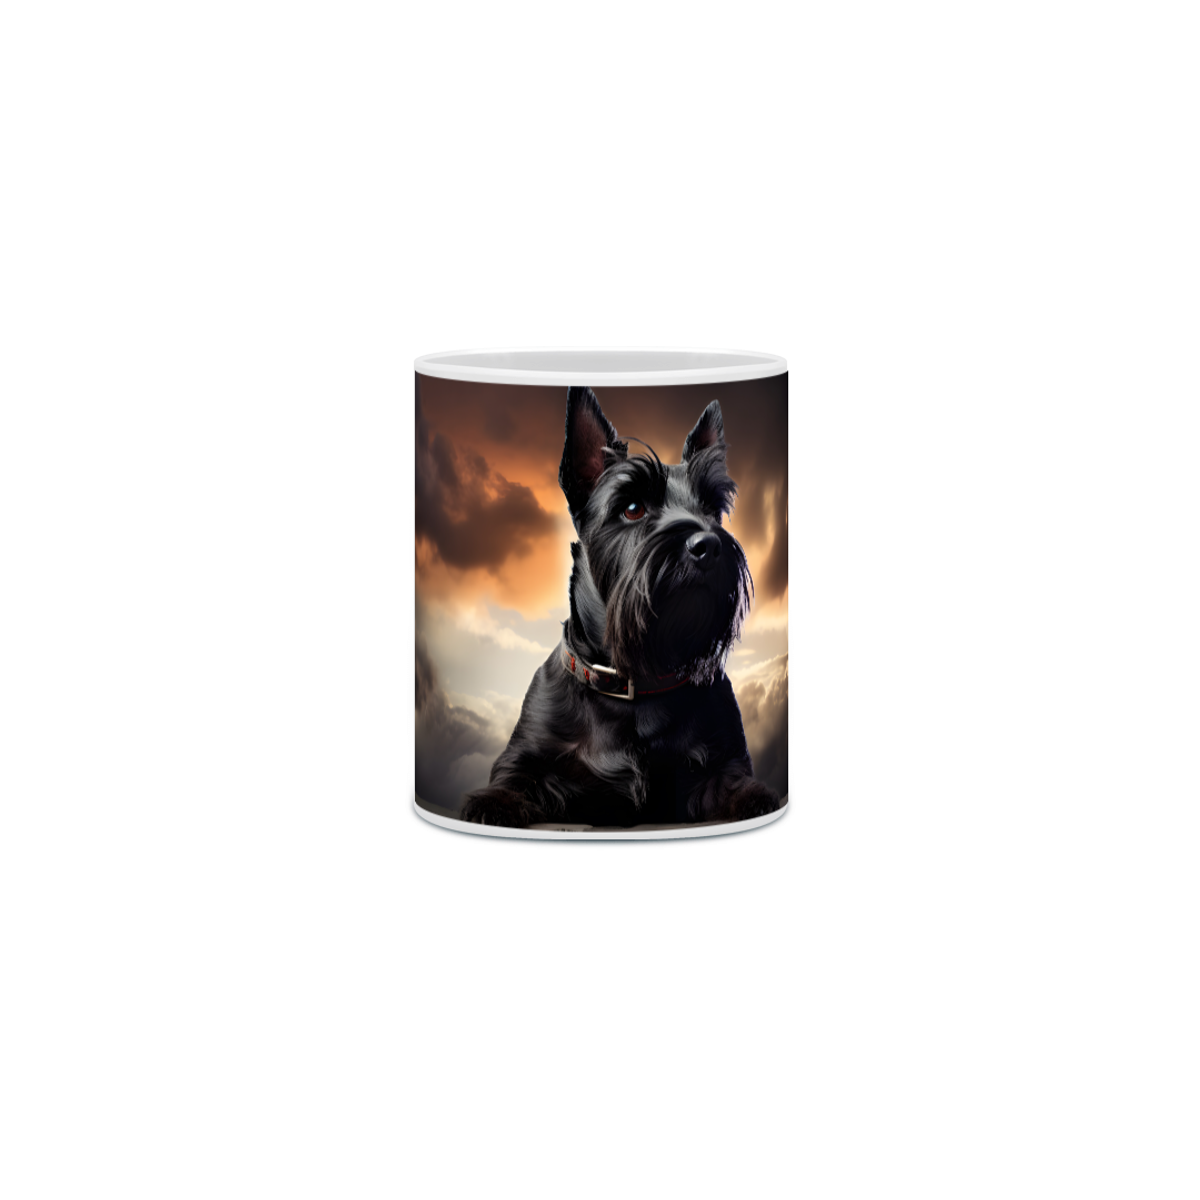 Nome do produto: Caneca Scottish Terrier com Arte Digital - #Autenticidade 0016